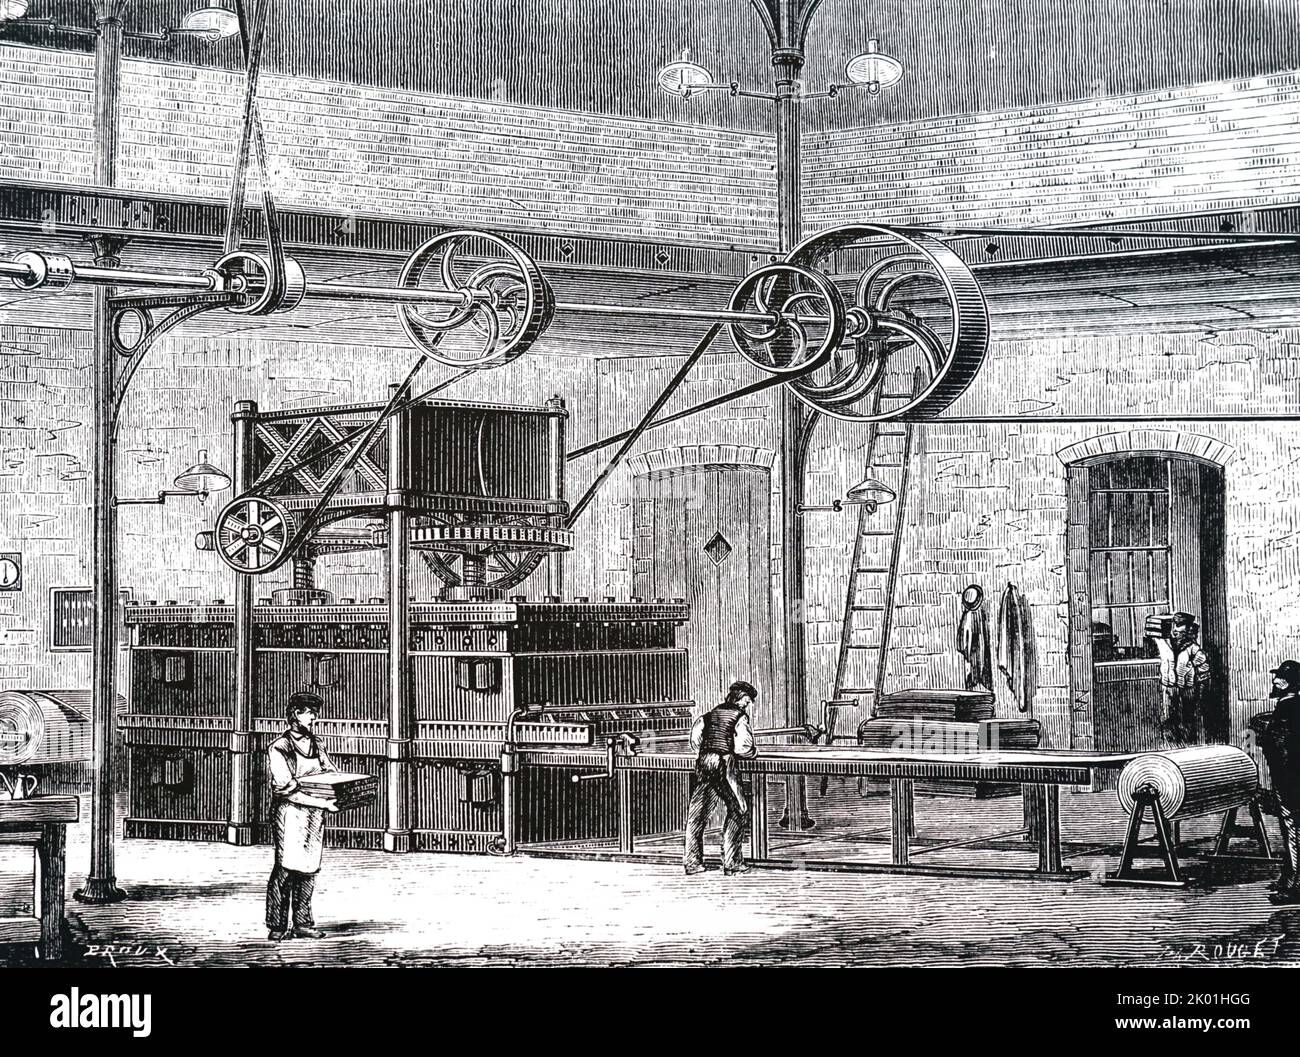 Apparatur zur trockenen Vulkanisation von Gummi. Von Louis Figuier Les Merveilles de l'Industrie, Paris, Nd c.1870. Stockfoto